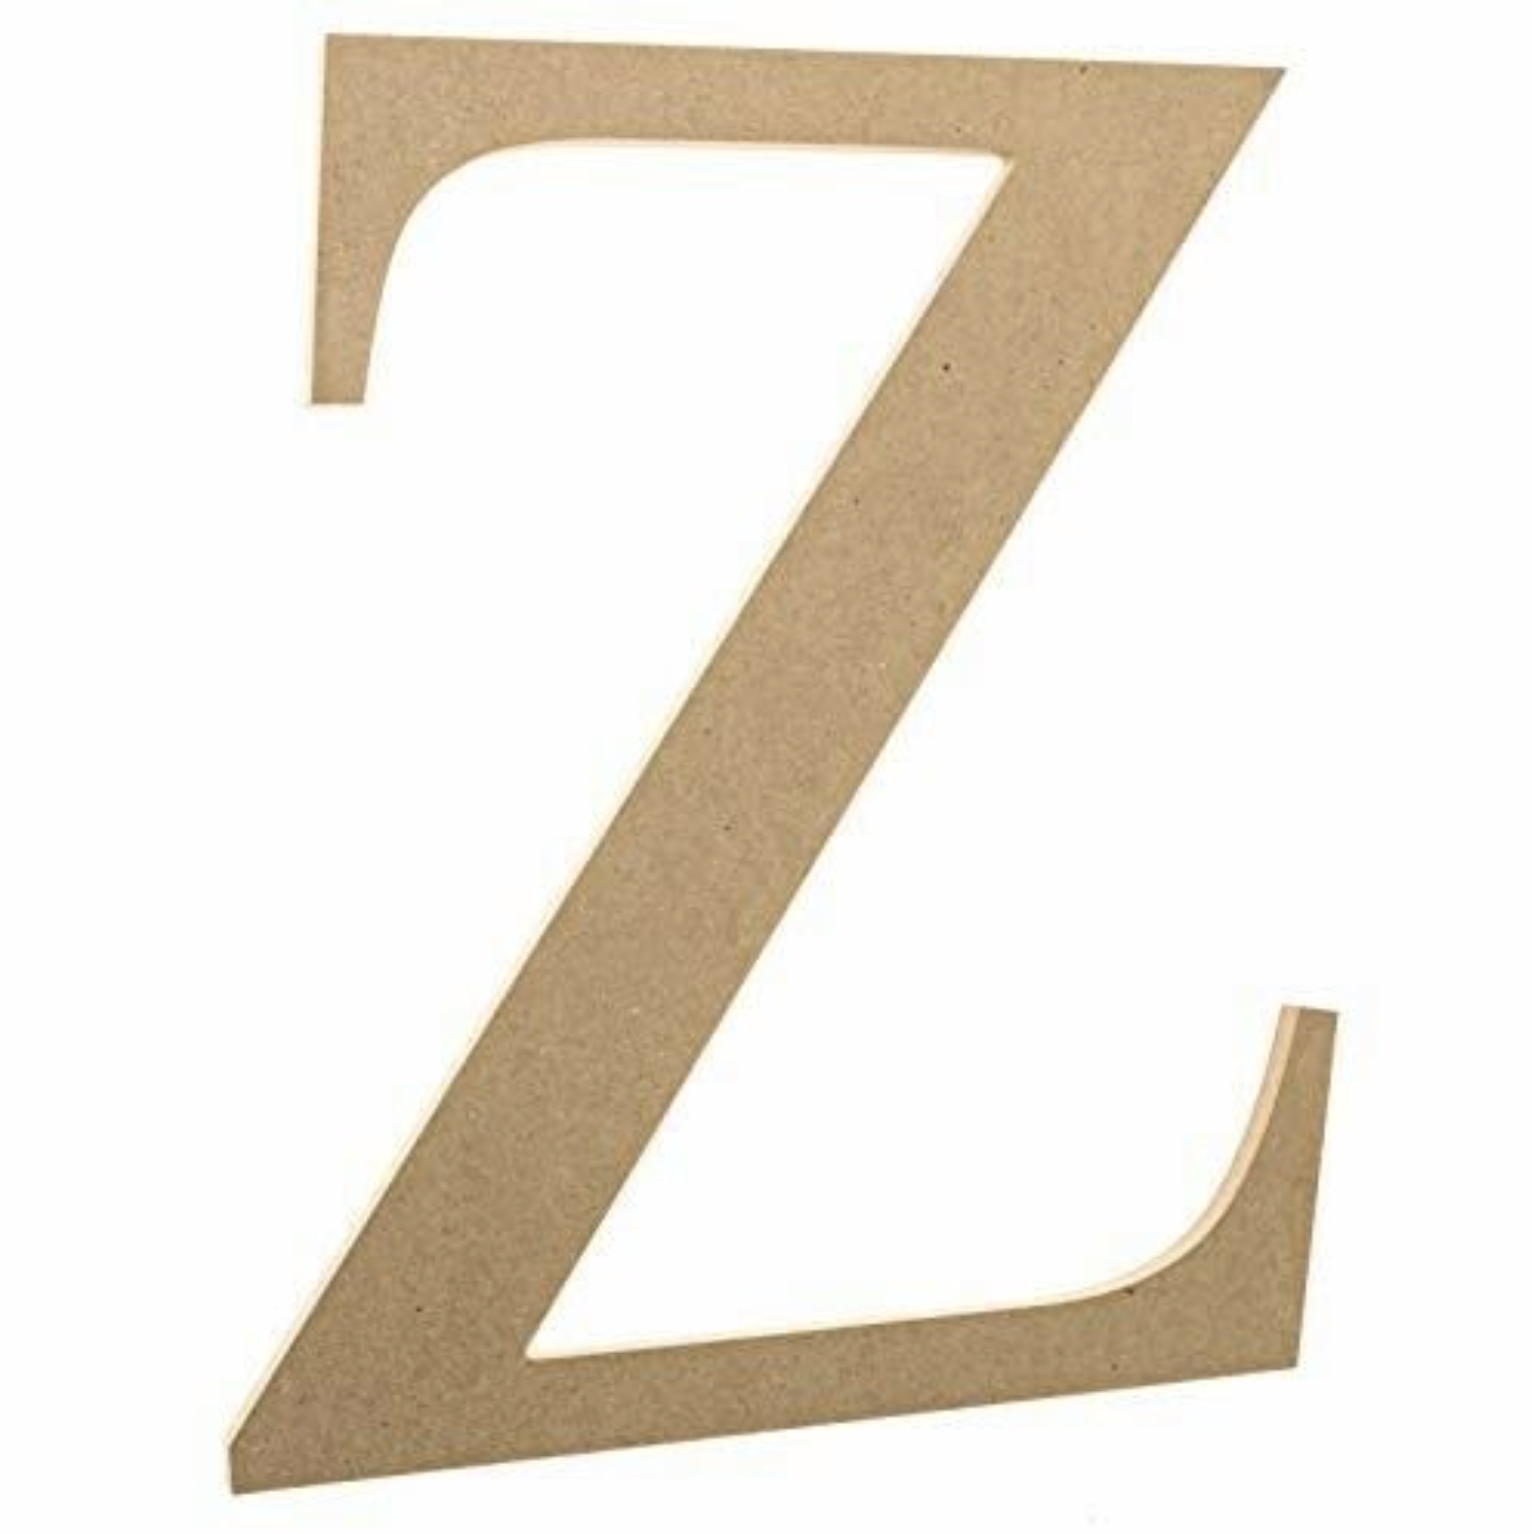 New - 12" Wooden Greek Letter Zeta - Fraternity/sorority Mdf Wood Letters